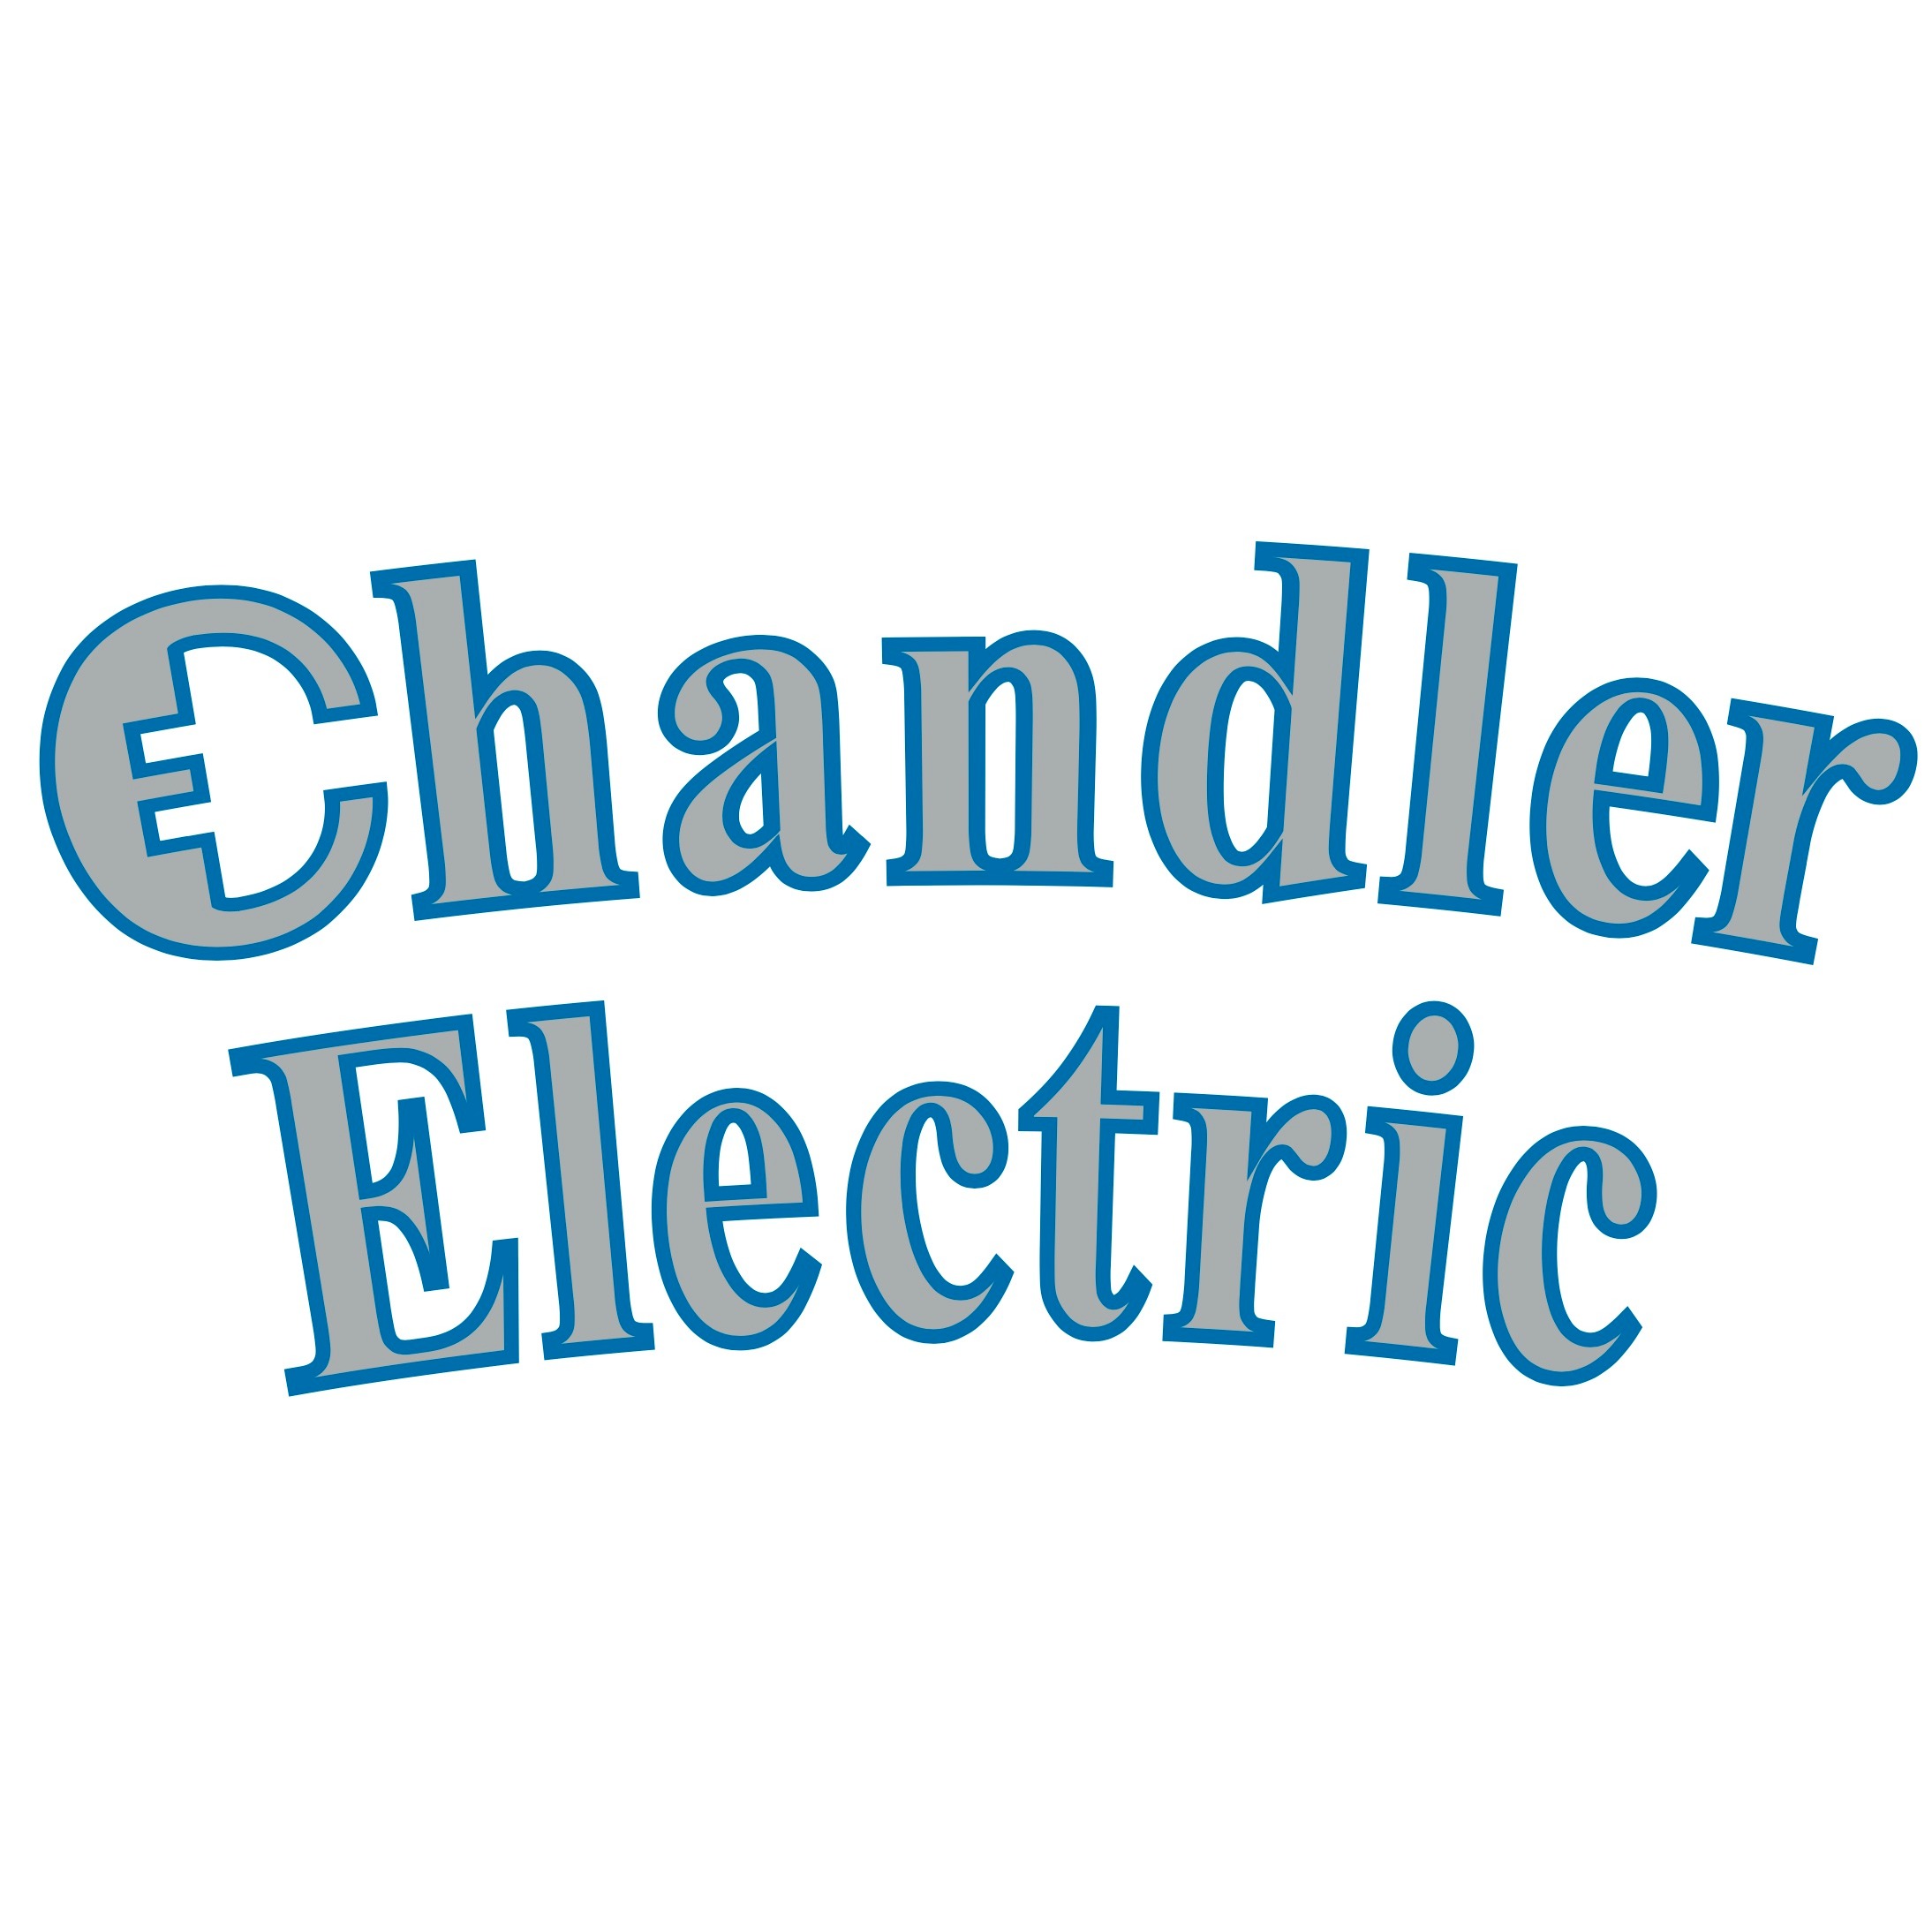 Chandler Electric - Cameron Park, CA 95682 - (530)672-6157 | ShowMeLocal.com